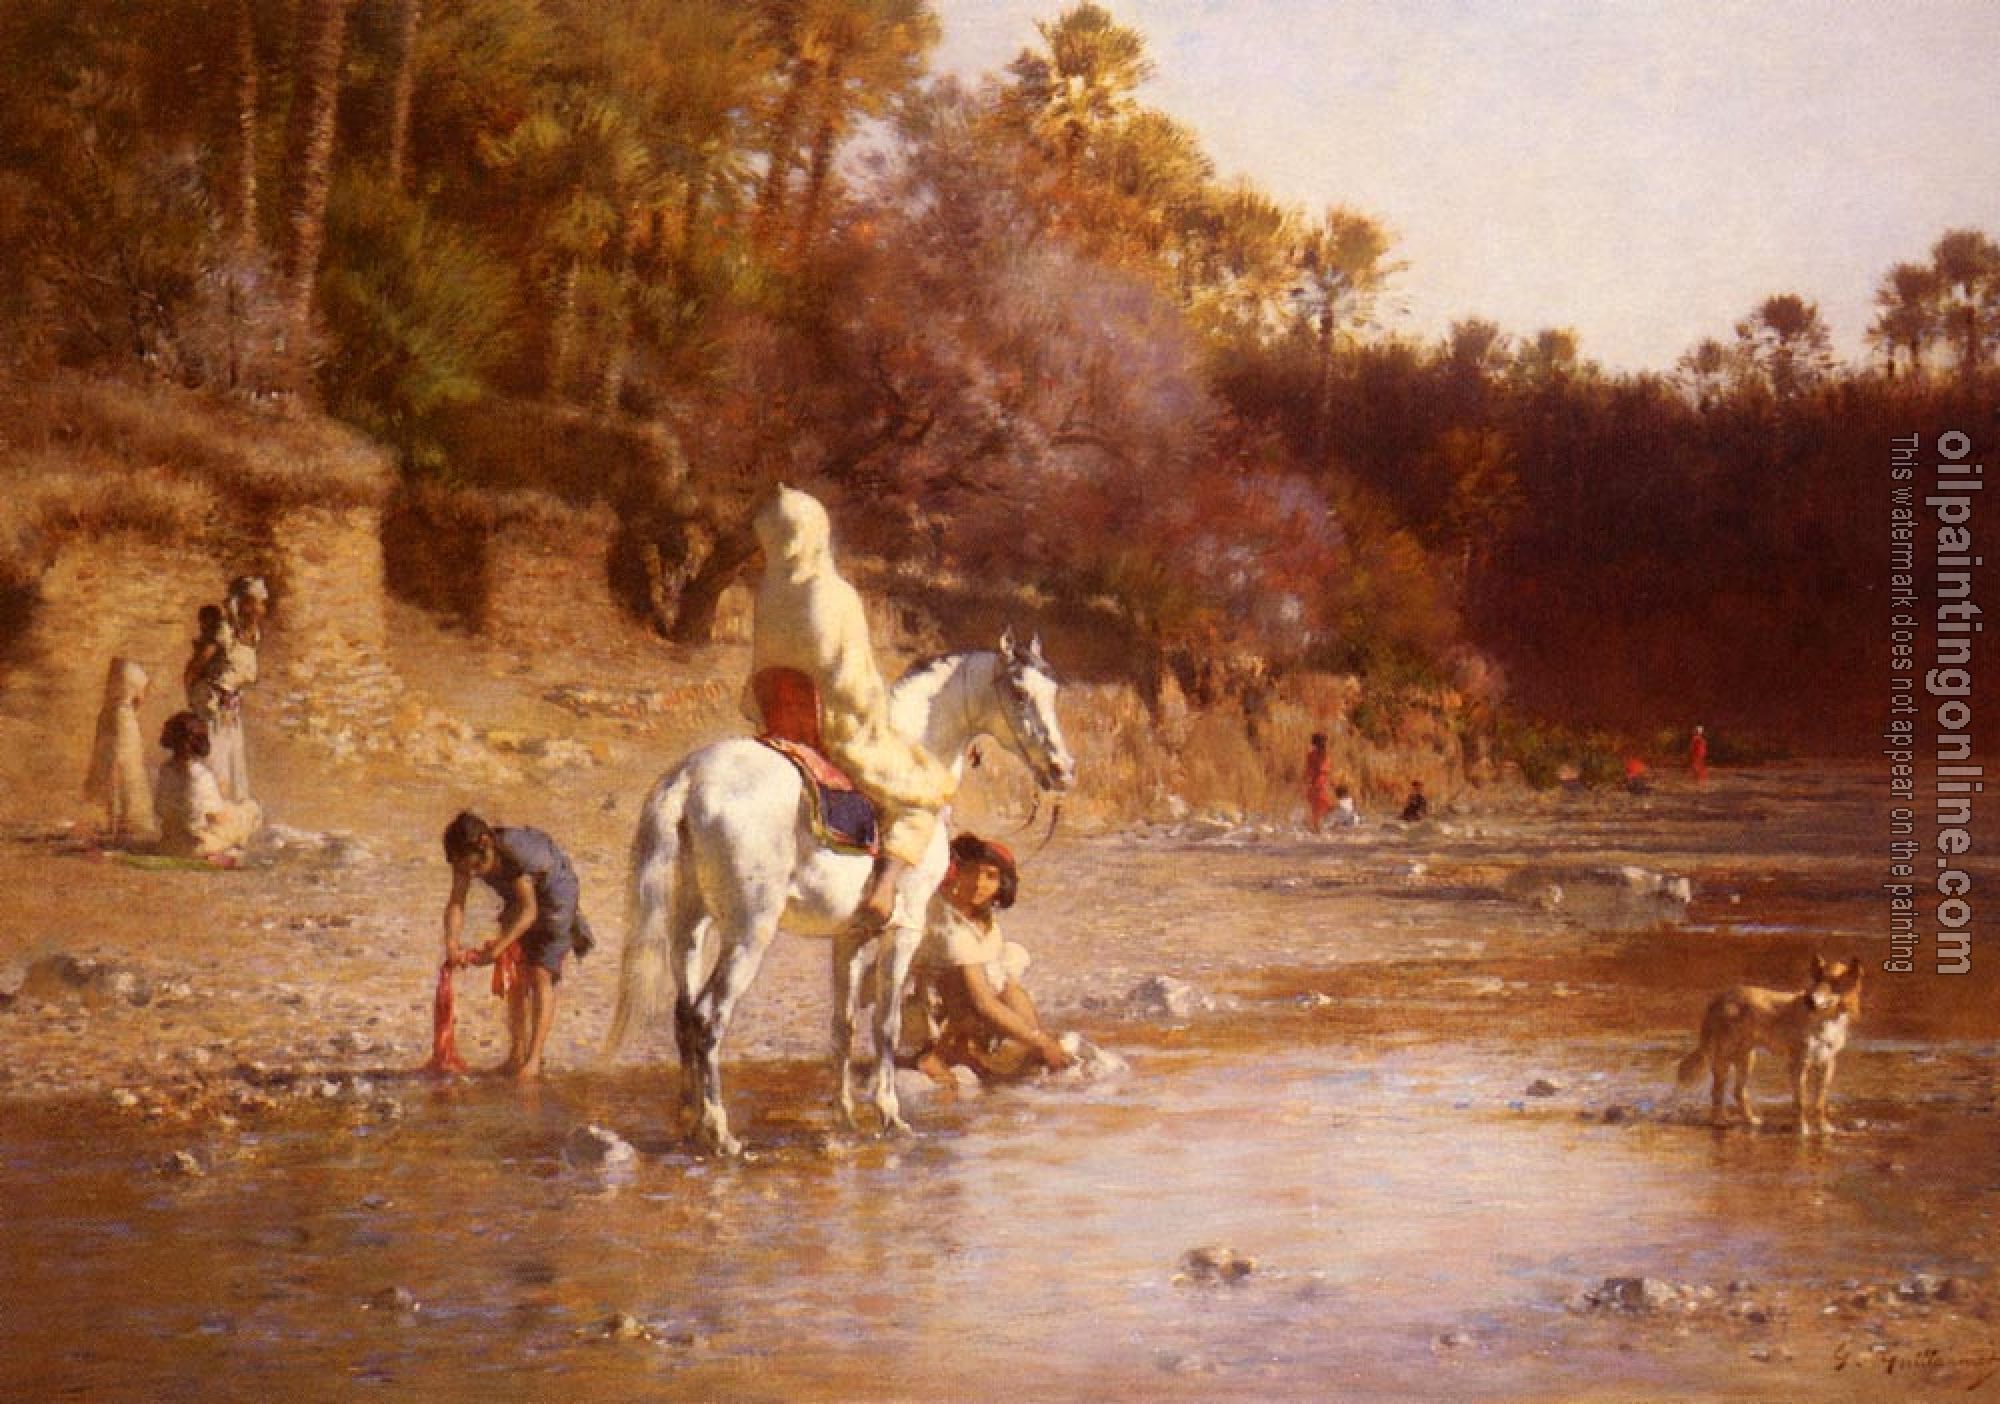 Guillaumet, Gustave - The River at El-Katara